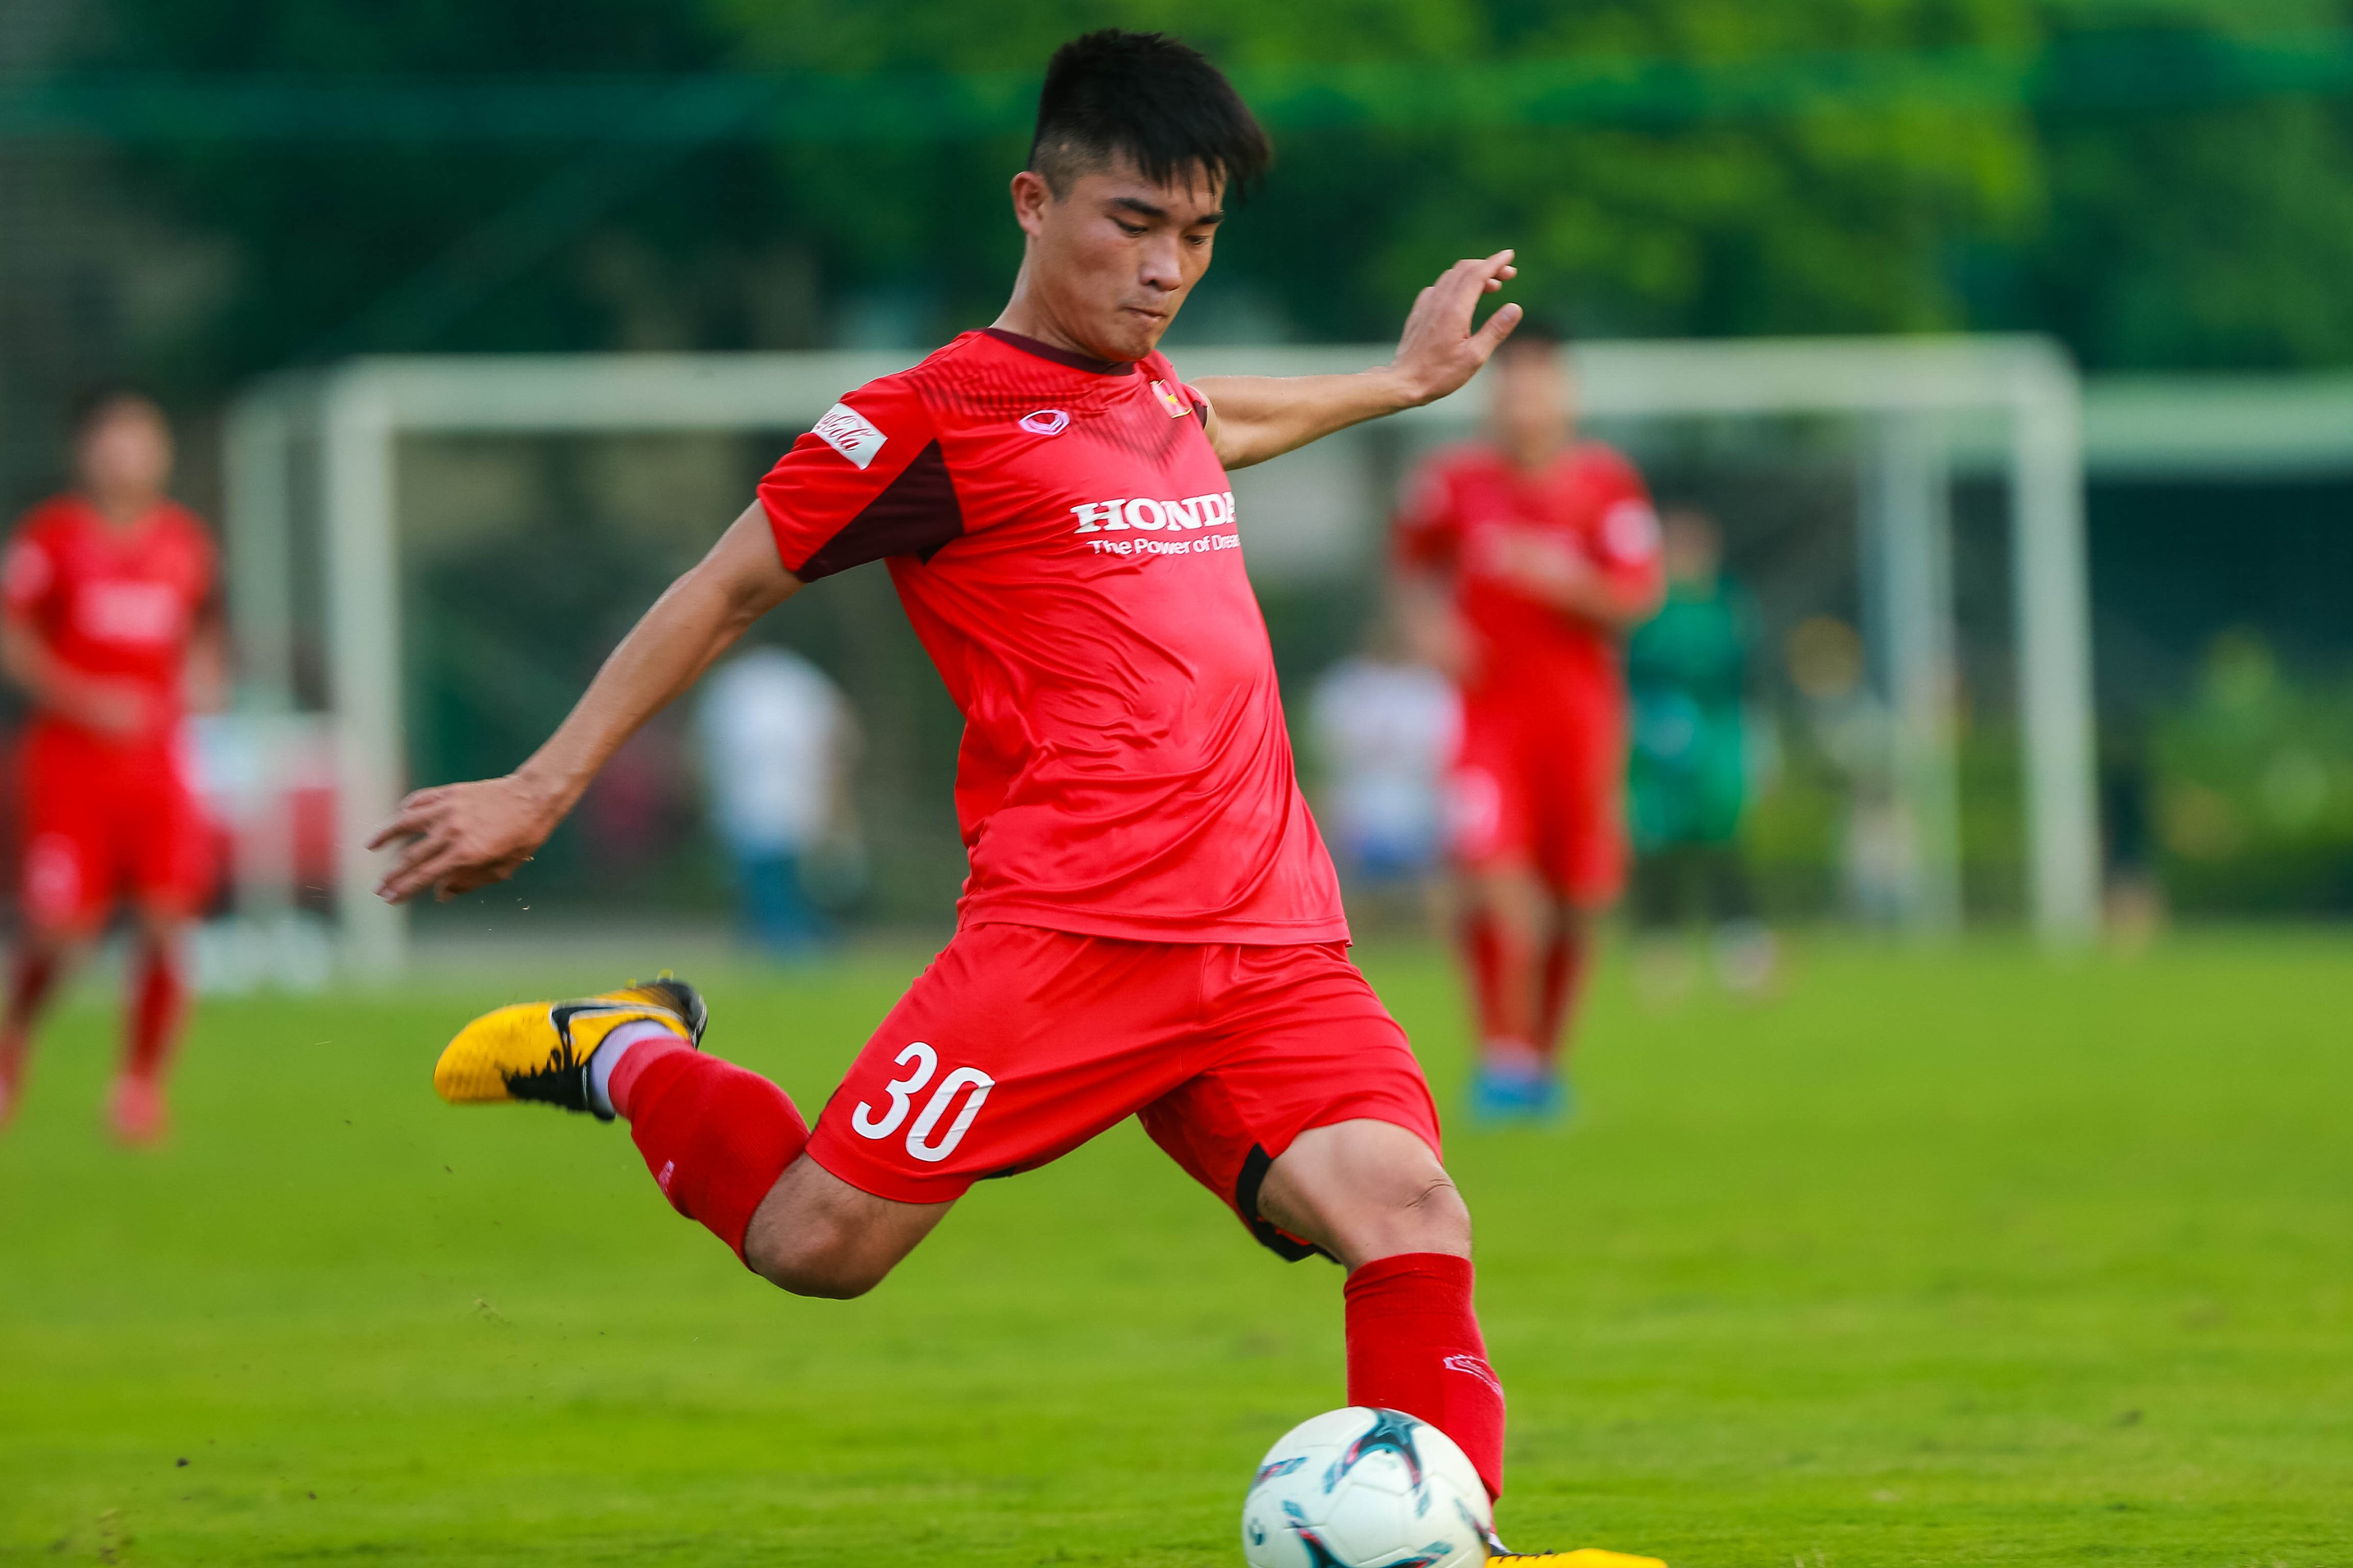 Tiền vệ Đặng Văn Lắm, hậu vệ Thái Bá Sang là những cầu thủ có trên 700 phút thi đấu tại V.League 2020. Ảnh: Hải Hoàng